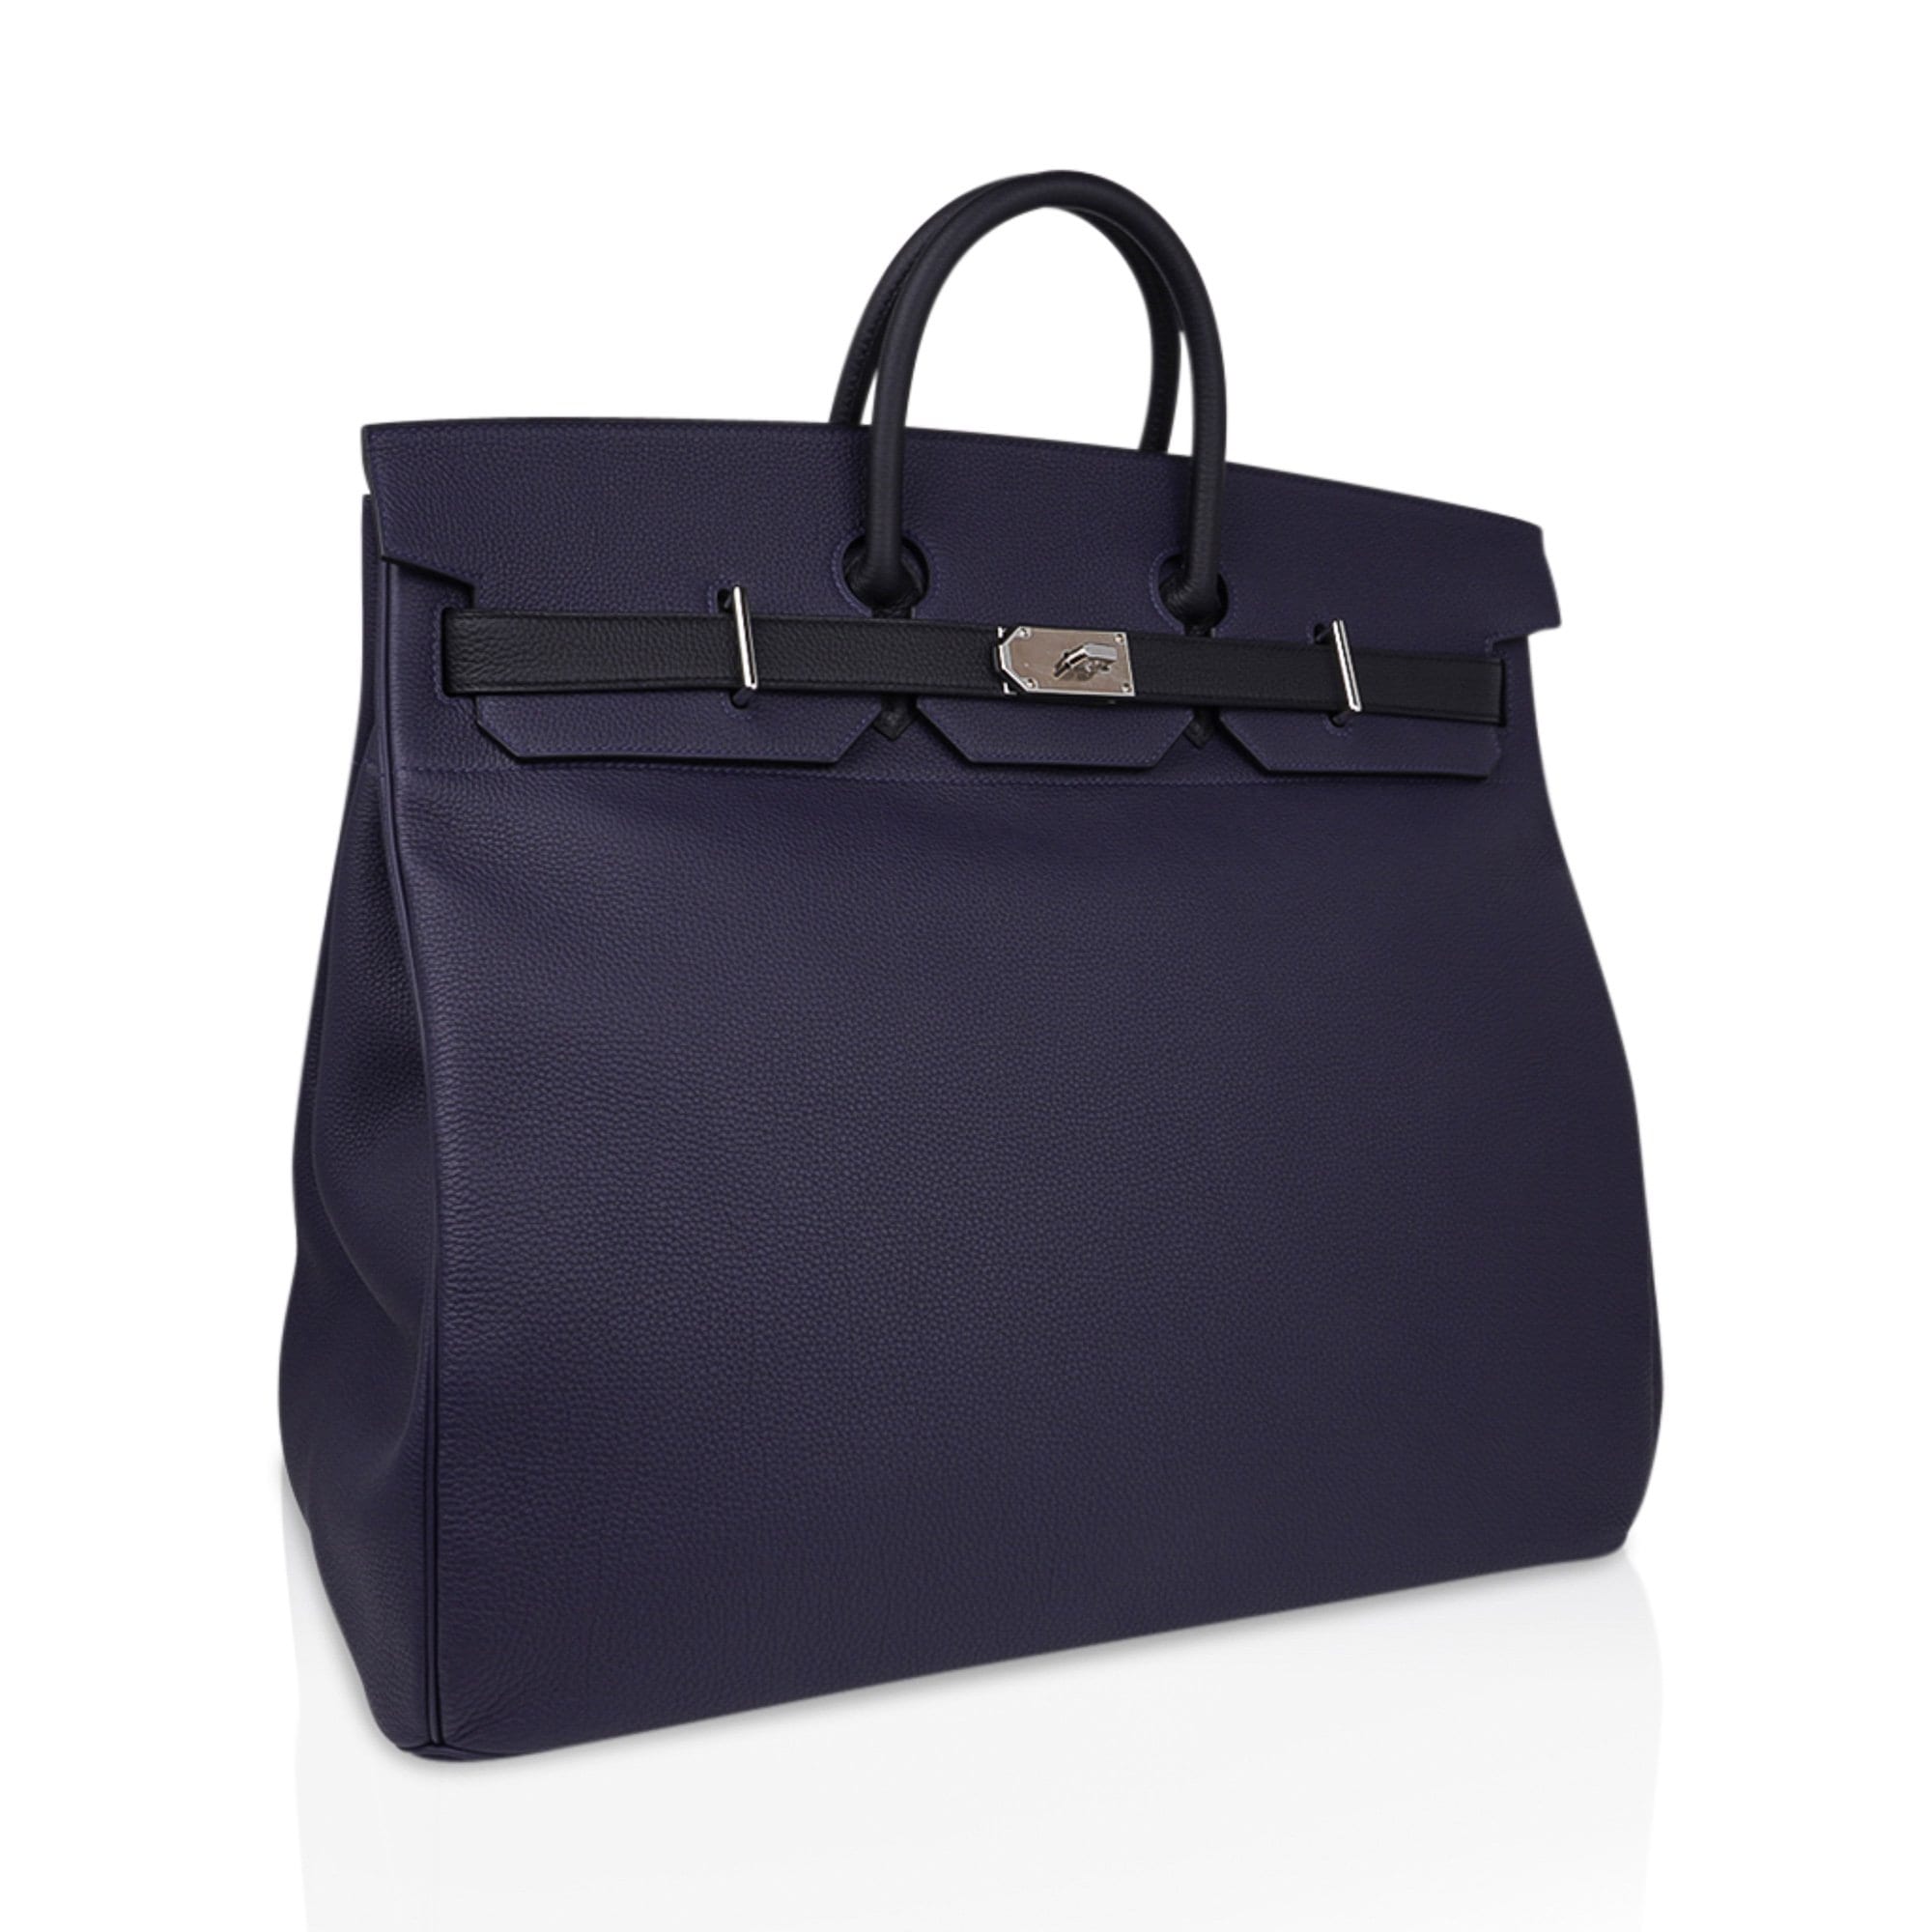 Hermès Birkin HAC 55 Brown Bag